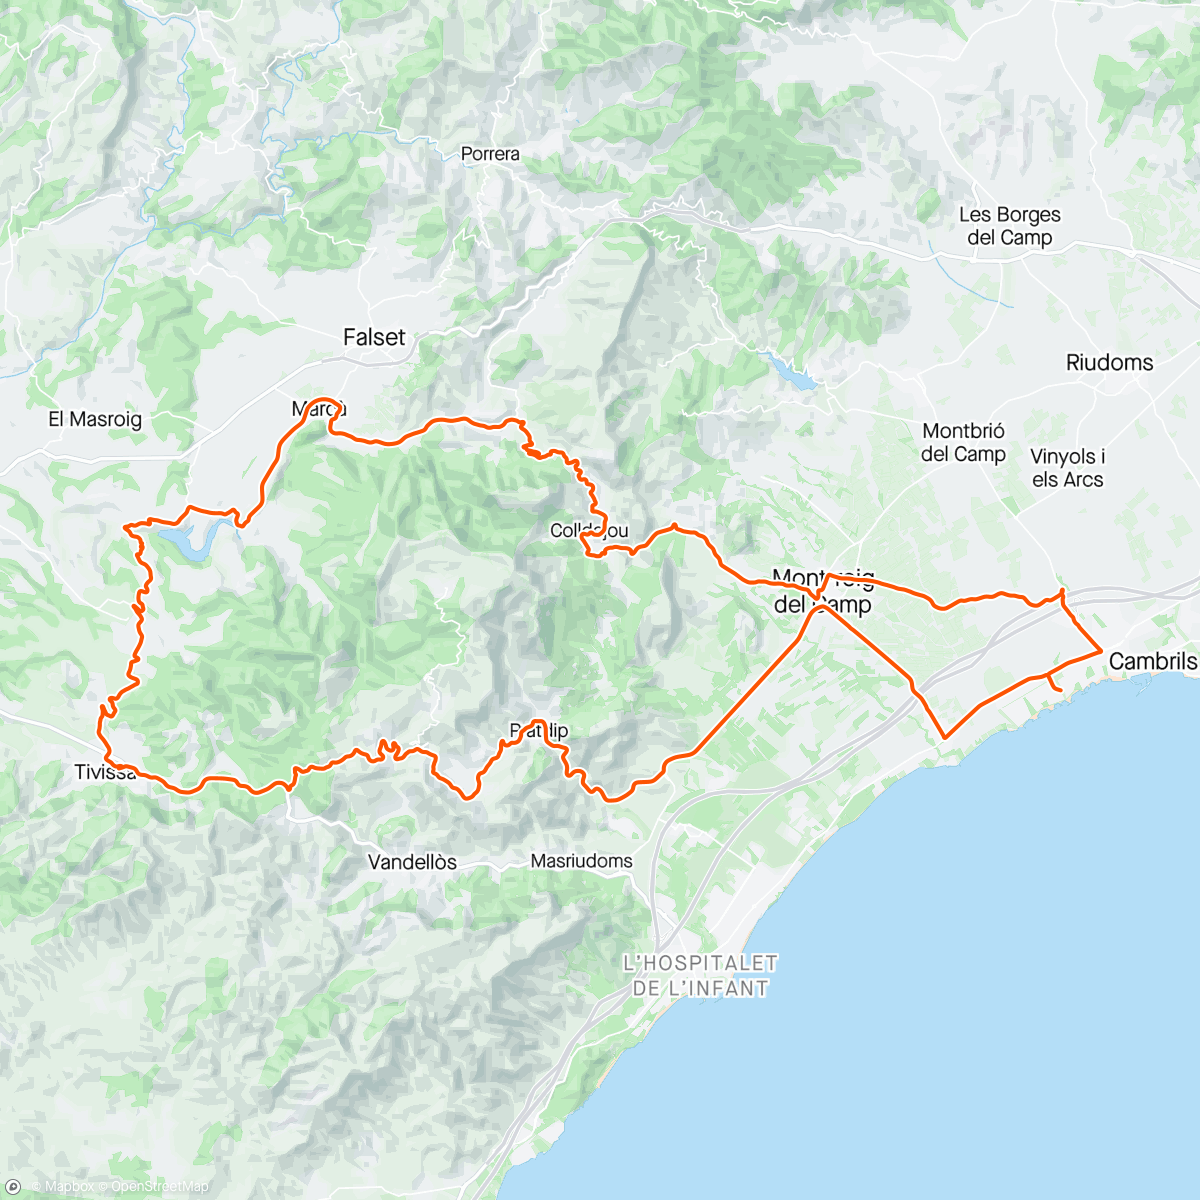 「Coll Roig - Tivissa - Coll de Fatxes」活動的地圖